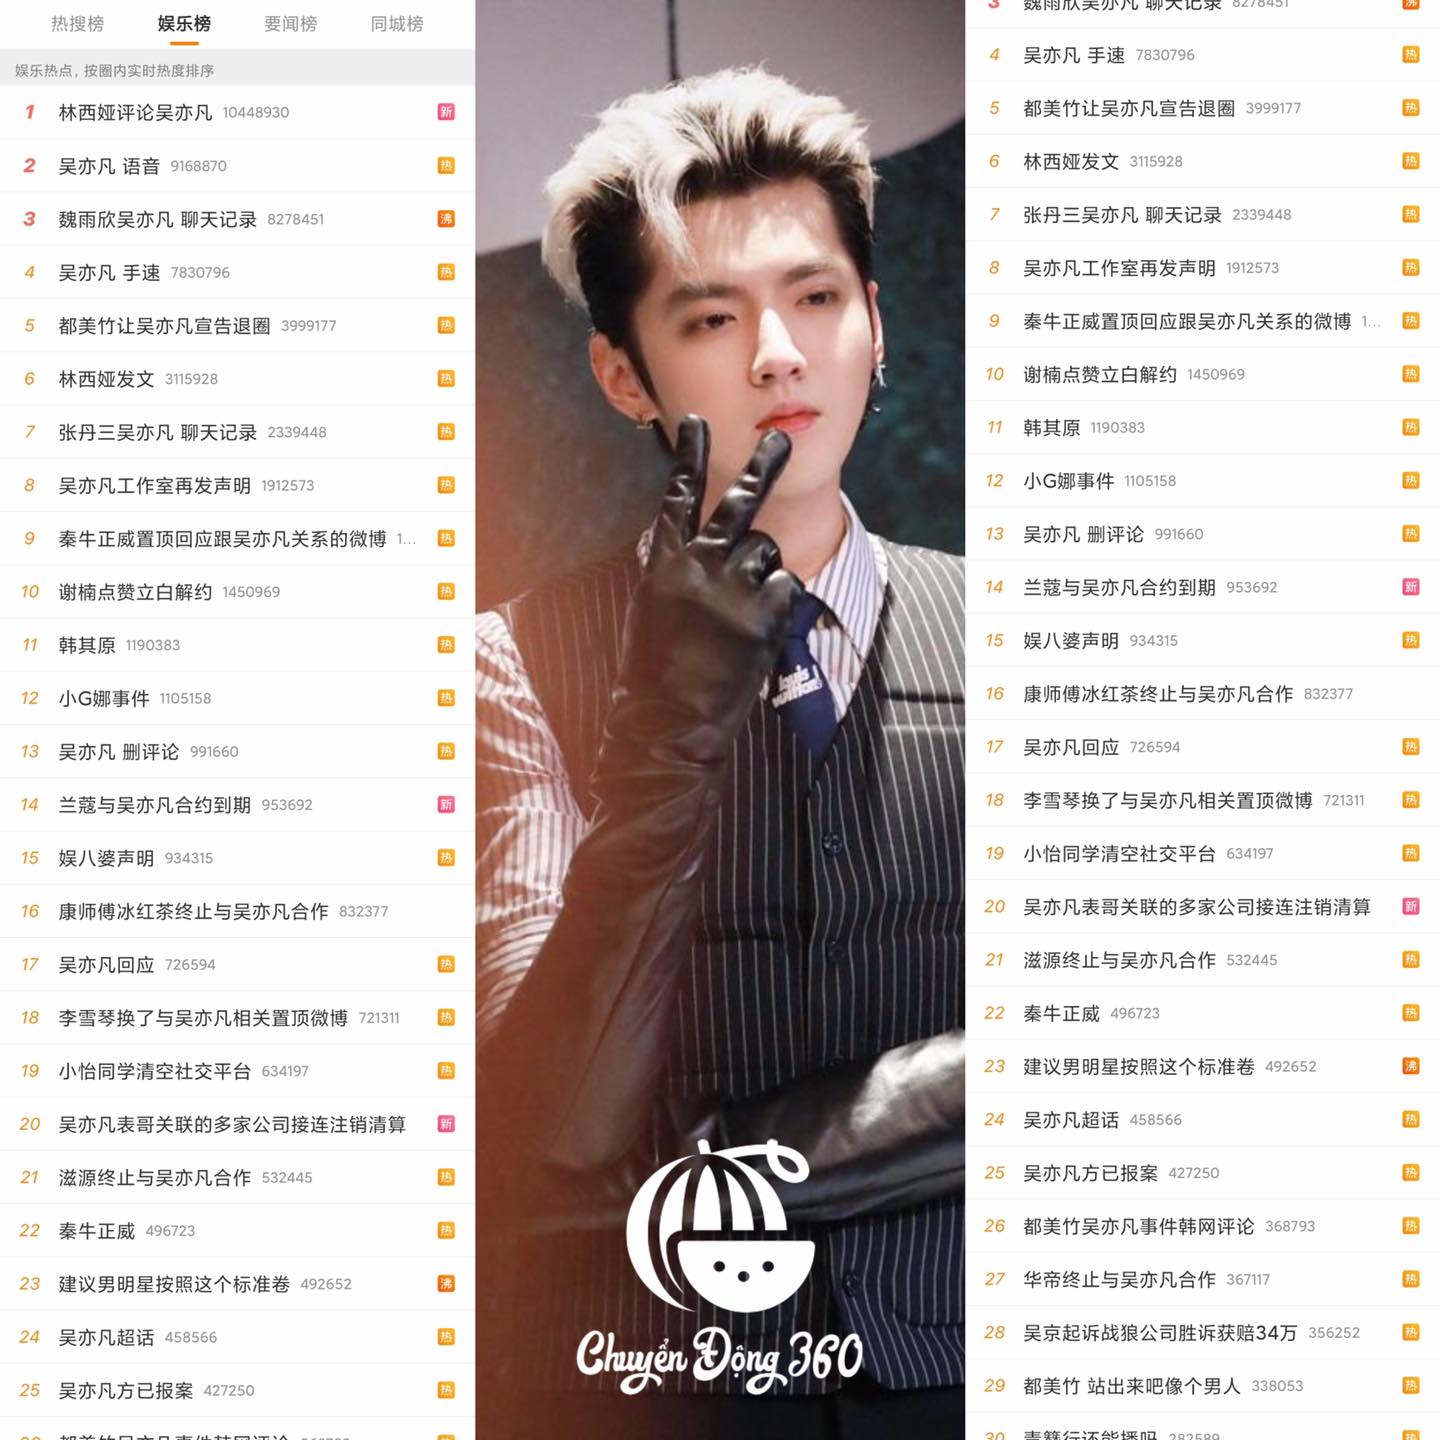 Ngô Diệc Phàm qua mặt Trịnh Sảng lập kỷ lục chưa từng có trong lịch sử Weibo 1